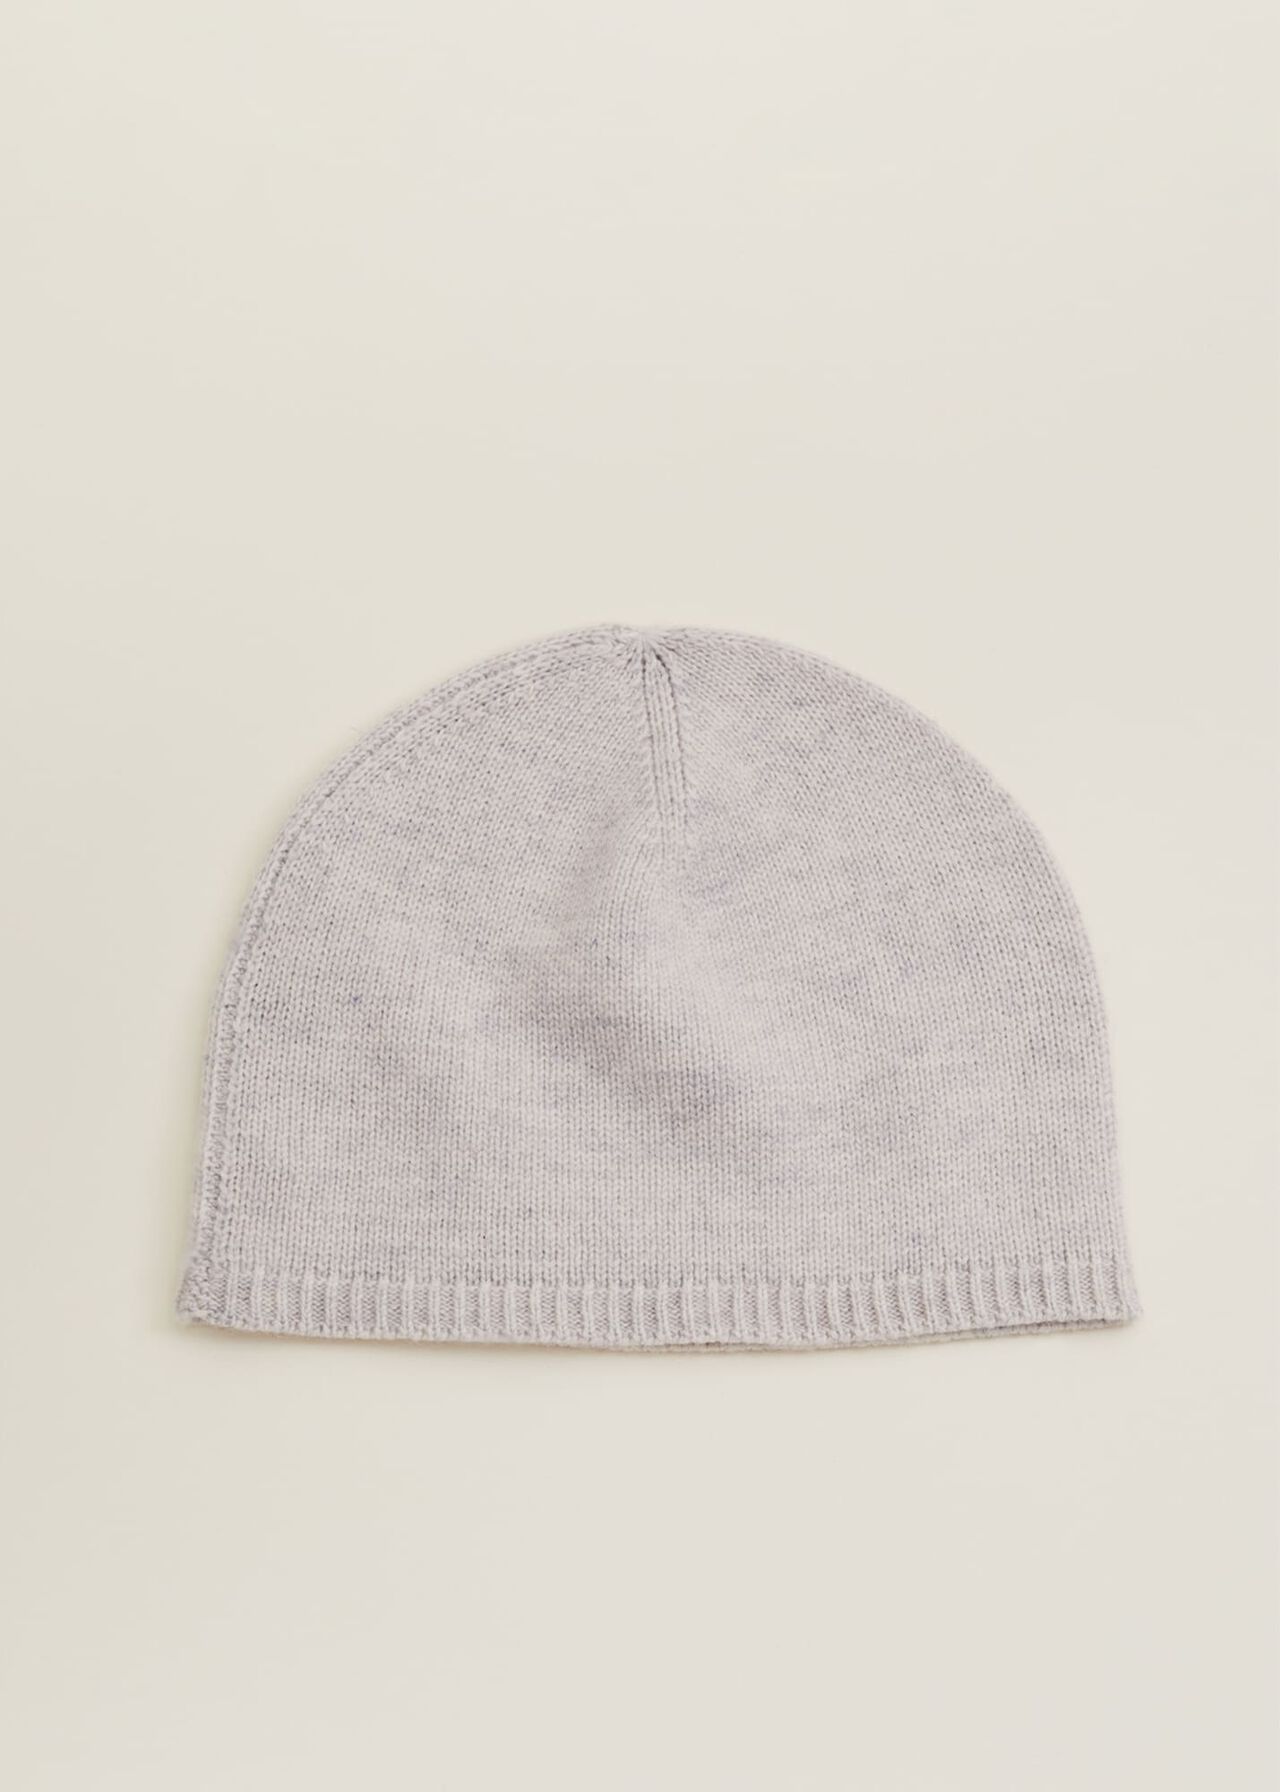 Wool Cashmere Beanie Hat